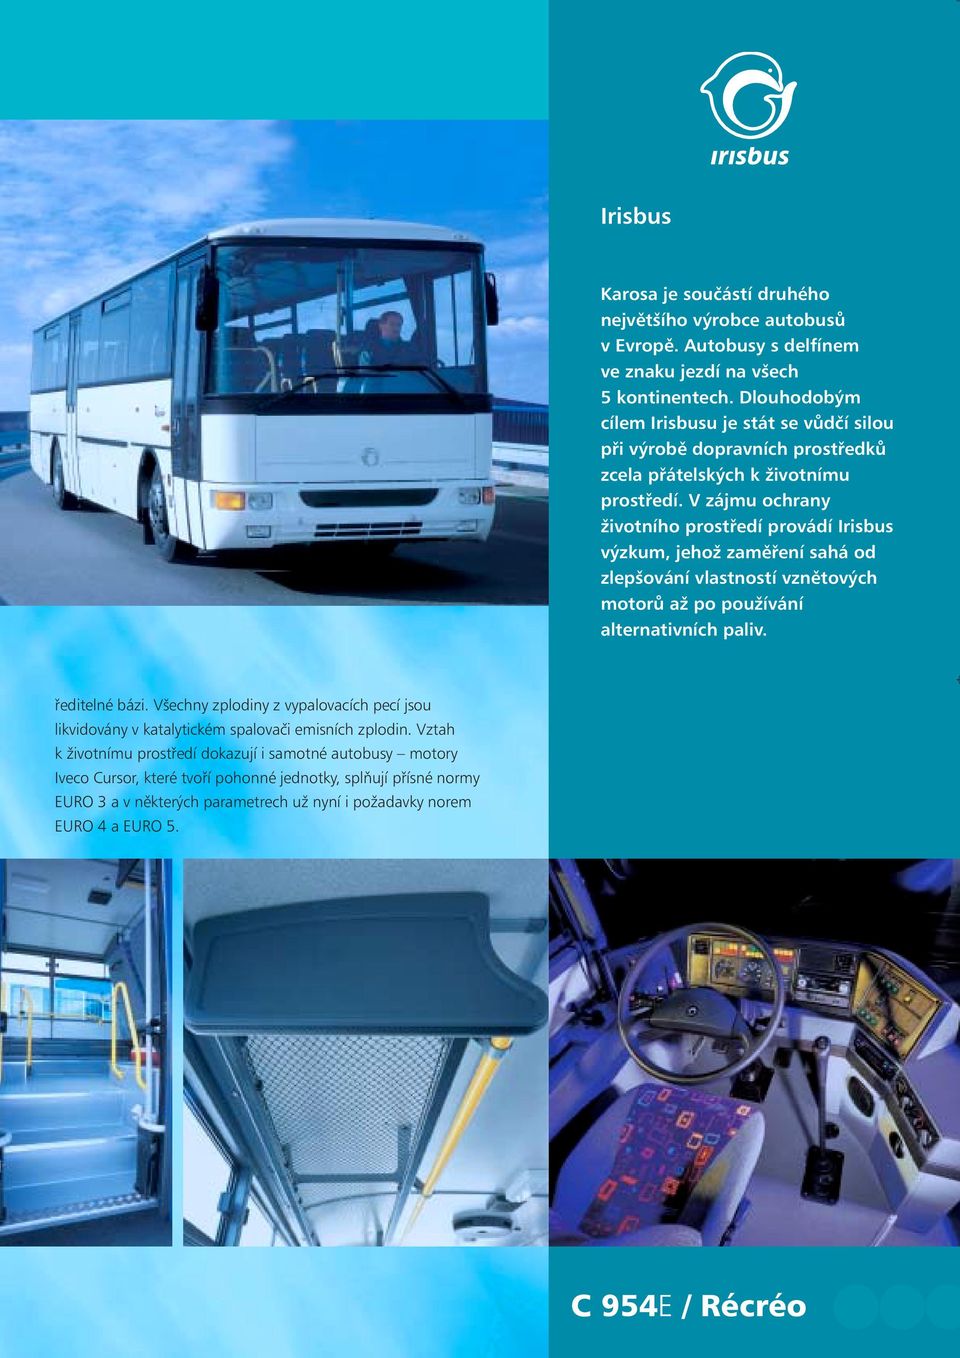 V zájmu ochrany životního prostředí provádí Irisbus výzkum, jehož zaměření sahá od zlepšování vlastností vznětových motorů až po používání alternativních paliv. ředitelné bázi.